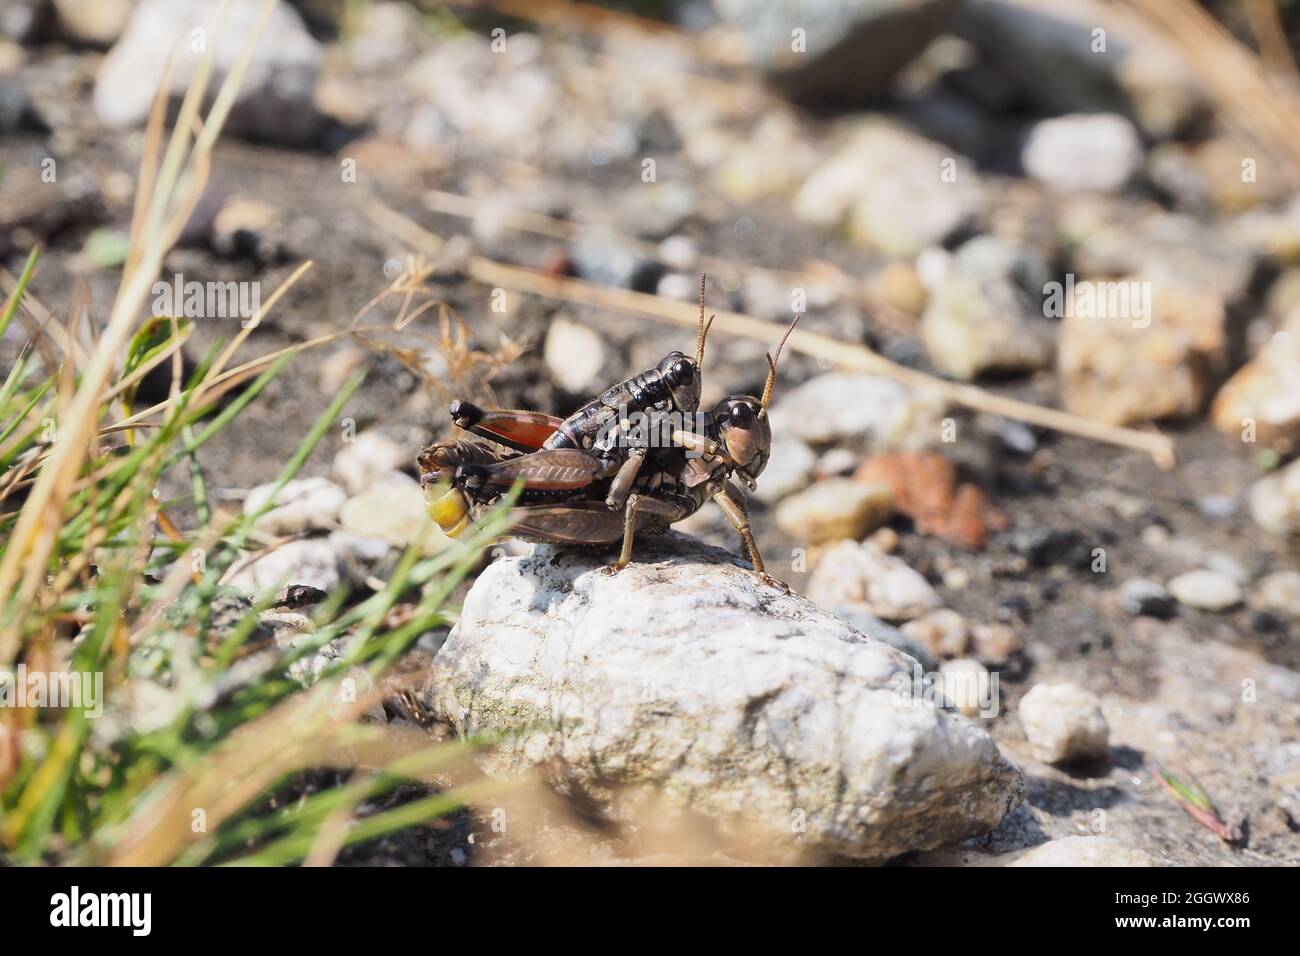 Podisma Pèdestris, une espèce de sauterelle à courtes cornes, dans la chaîne de montagnes Hohe Tauern, Autriche Banque D'Images